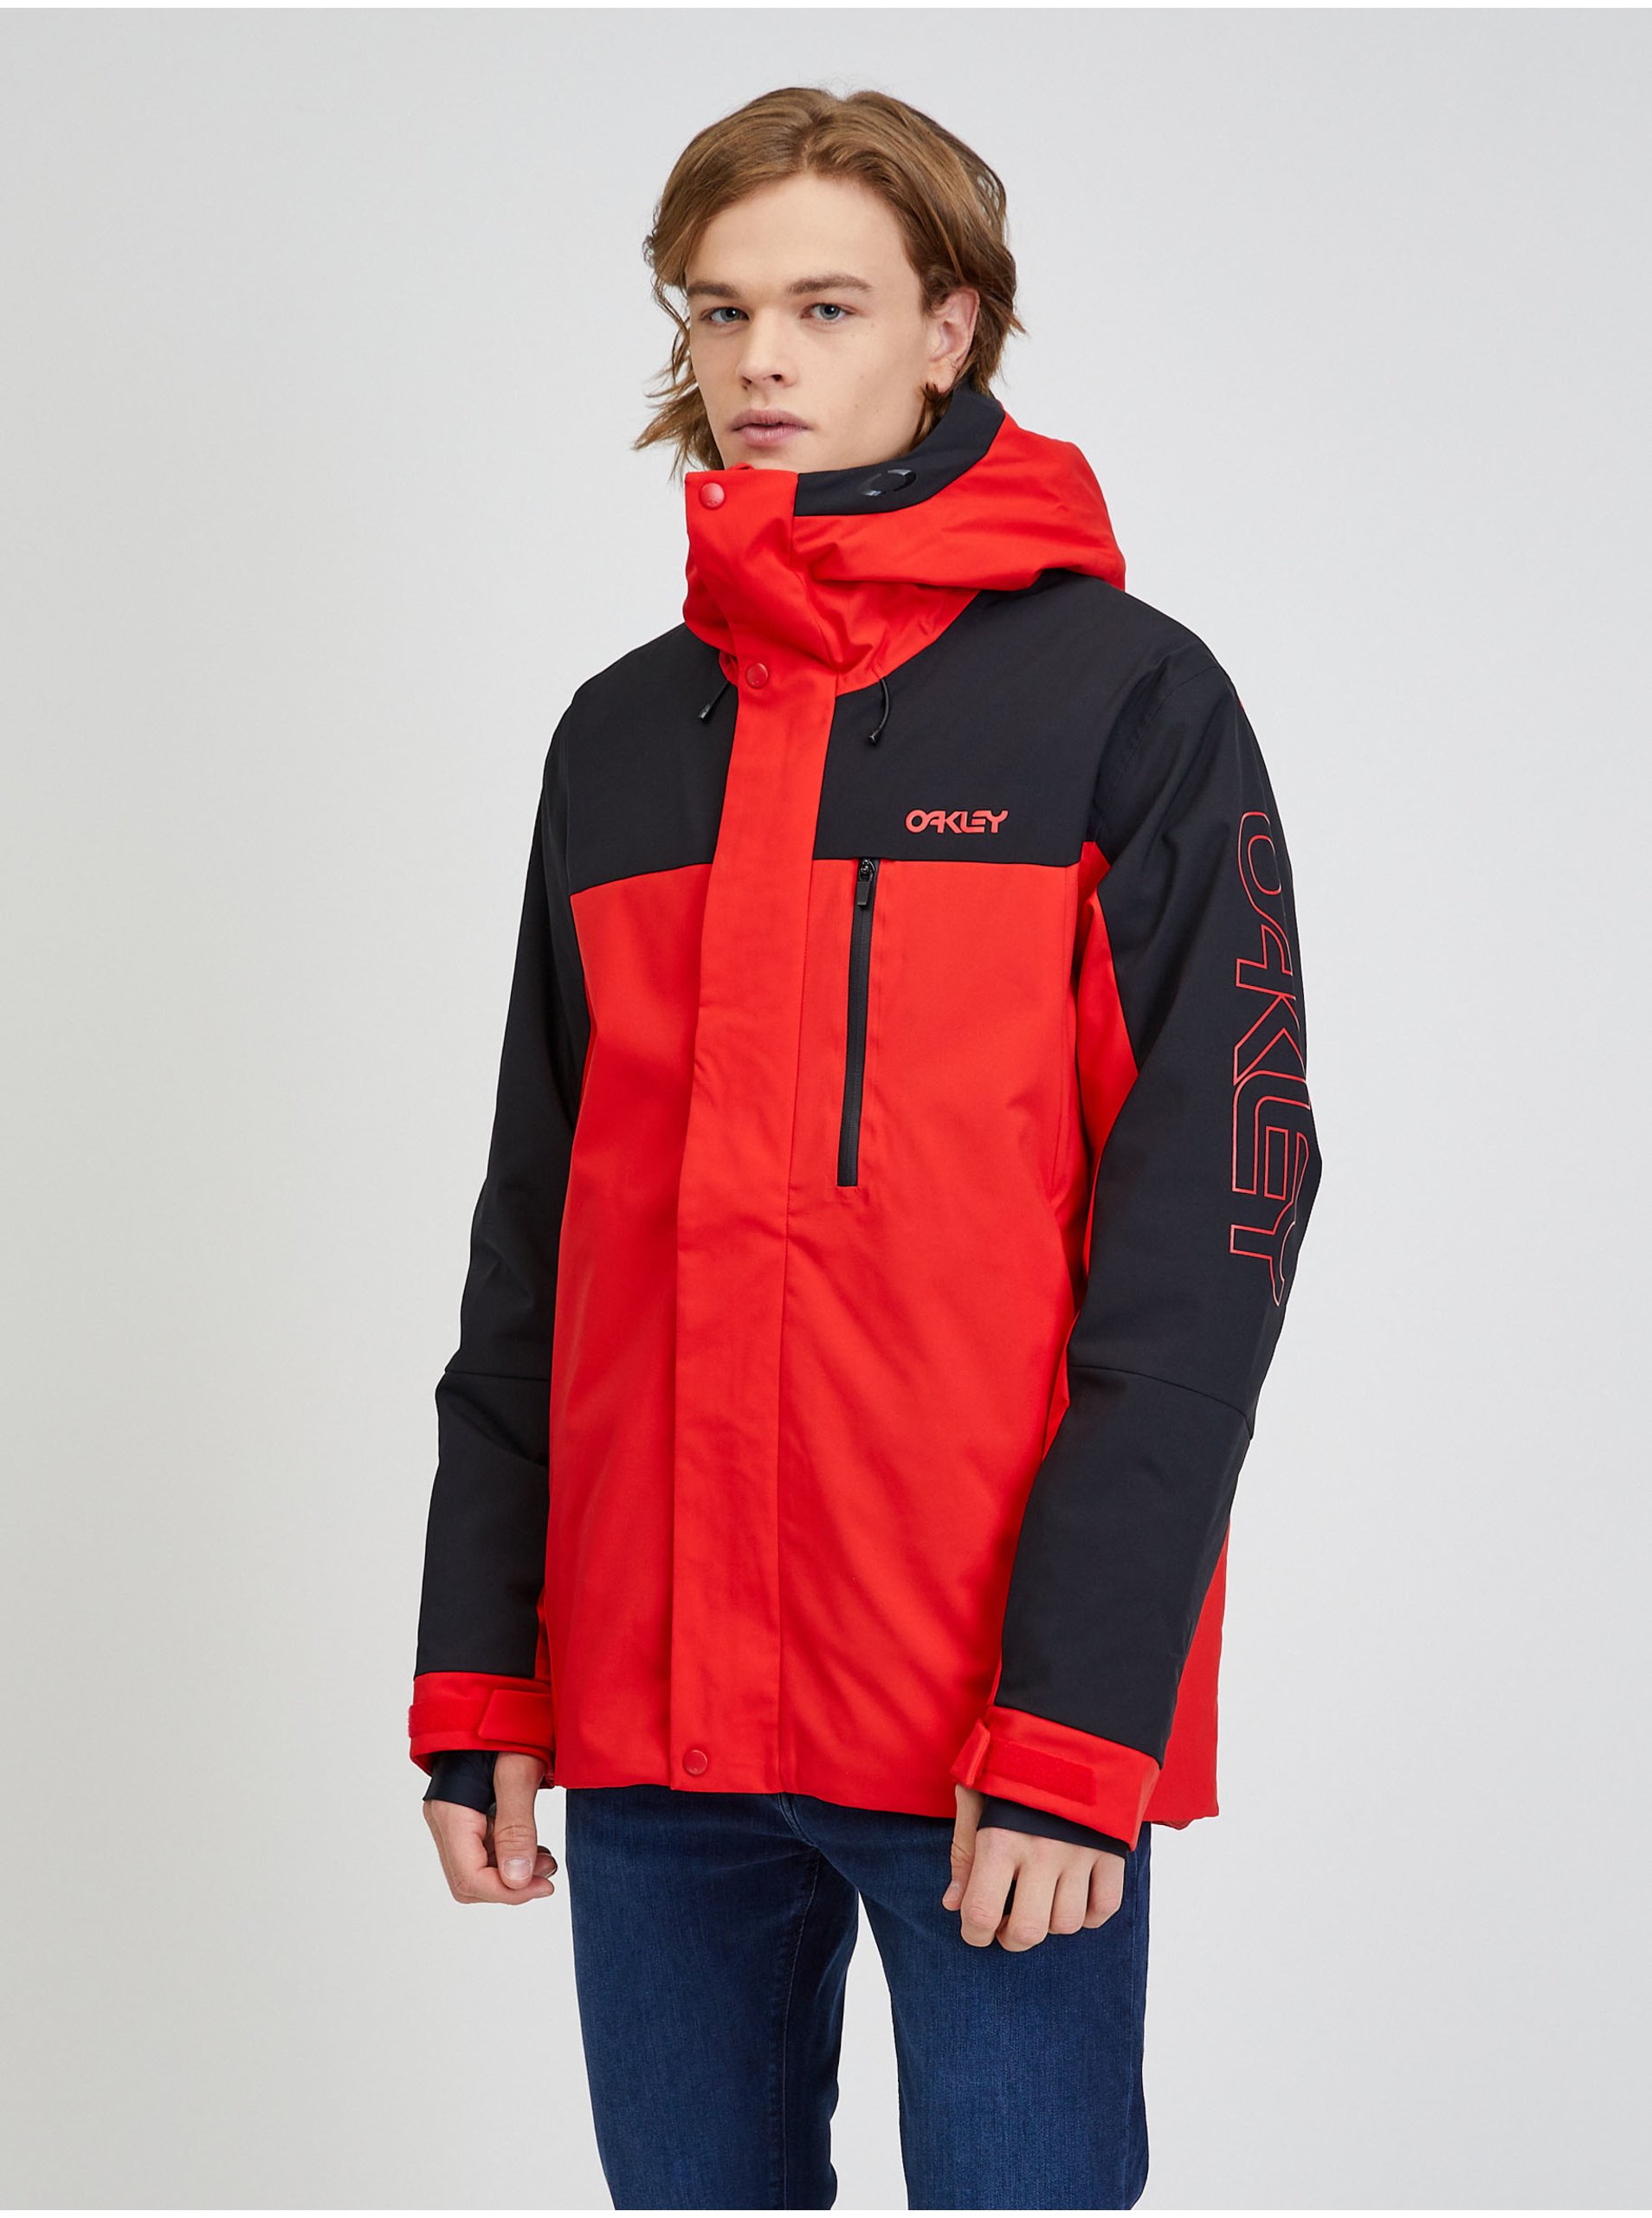 E-shop Černo-červená pánská lyžařská bunda Oakley